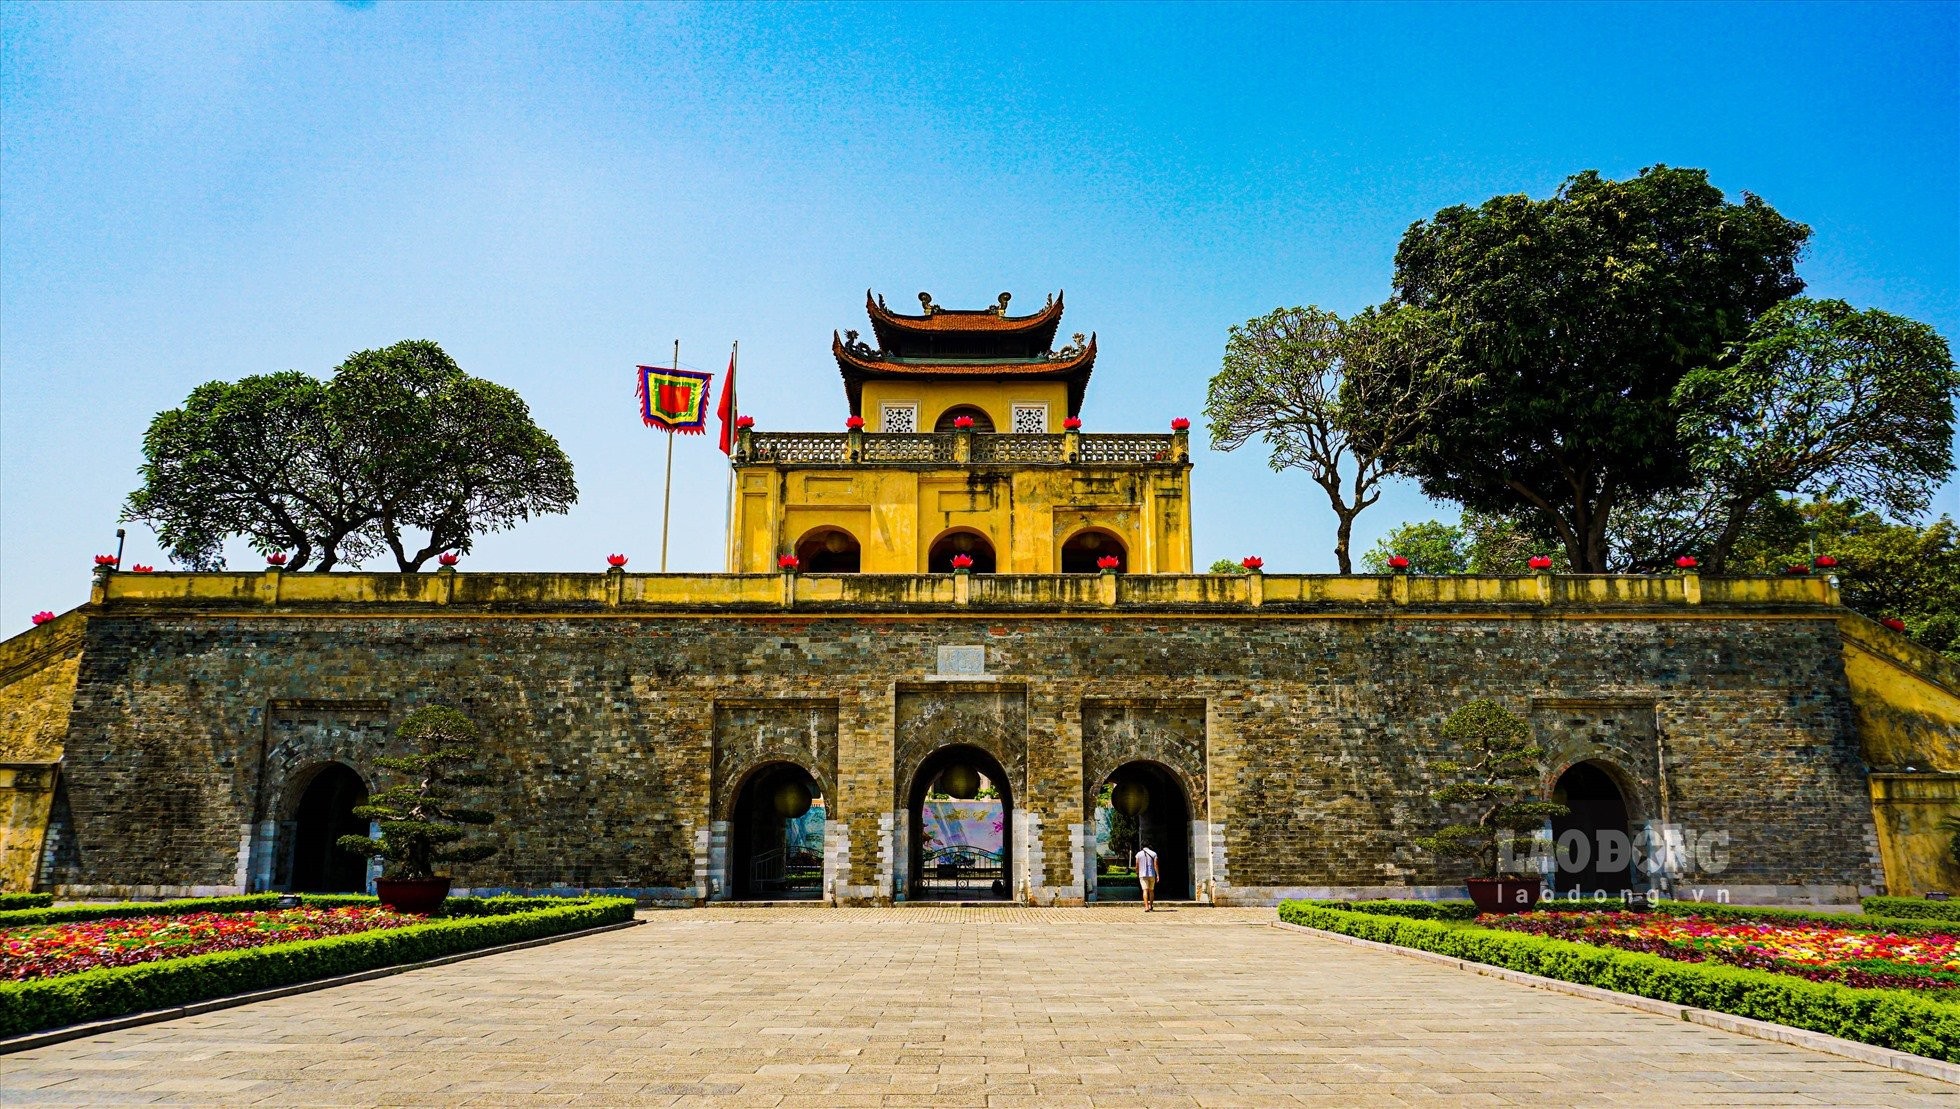  Hoàng thành Thăng Long đã được chứng nhận là biểu tượng văn hóa duy nhất của người Việt